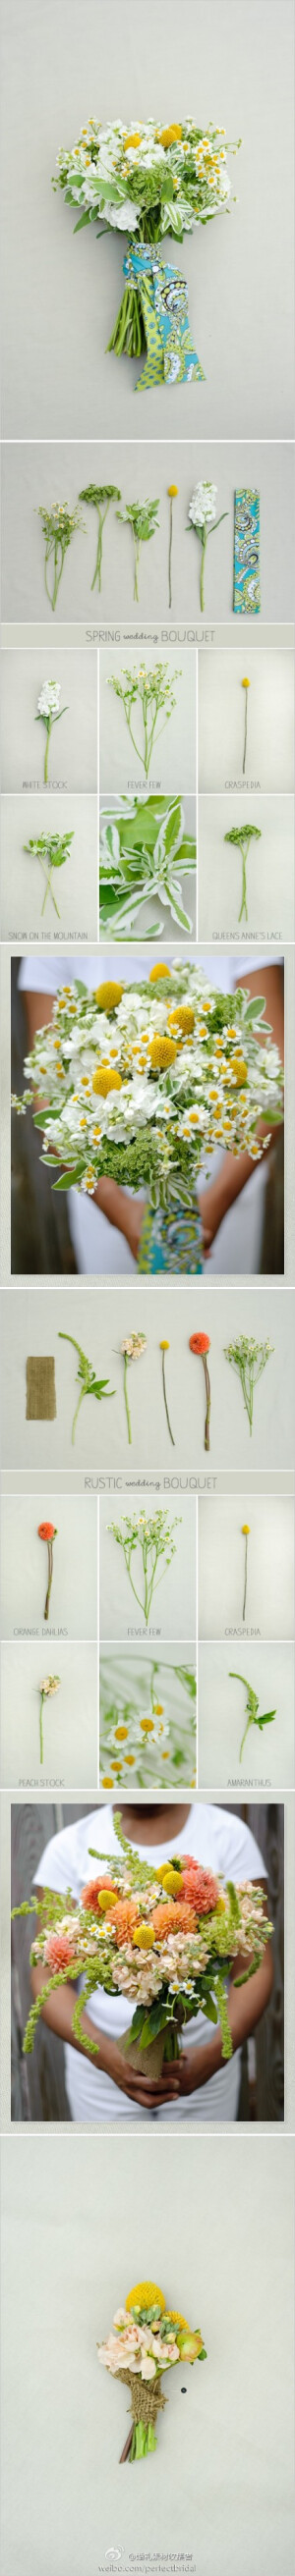 蓬松、可爱的手捧花和组成的花材分解